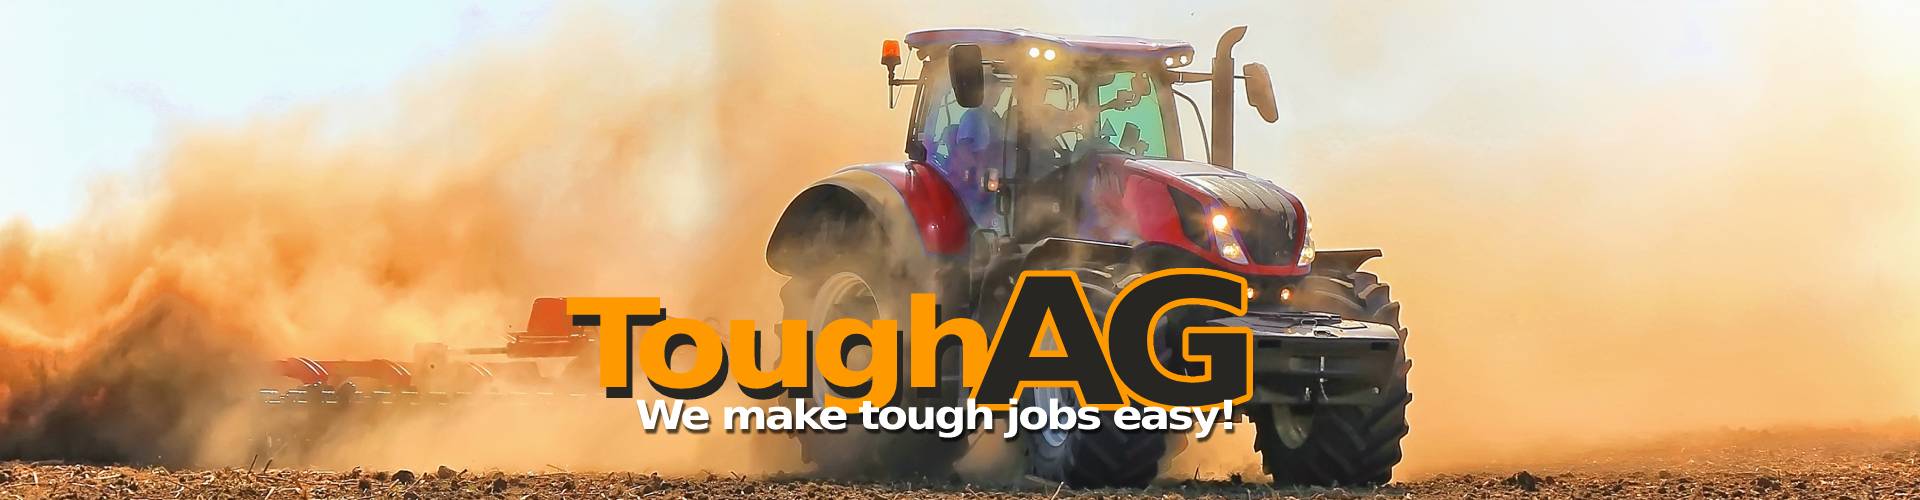 ToughAG... We make tough jobs easy!